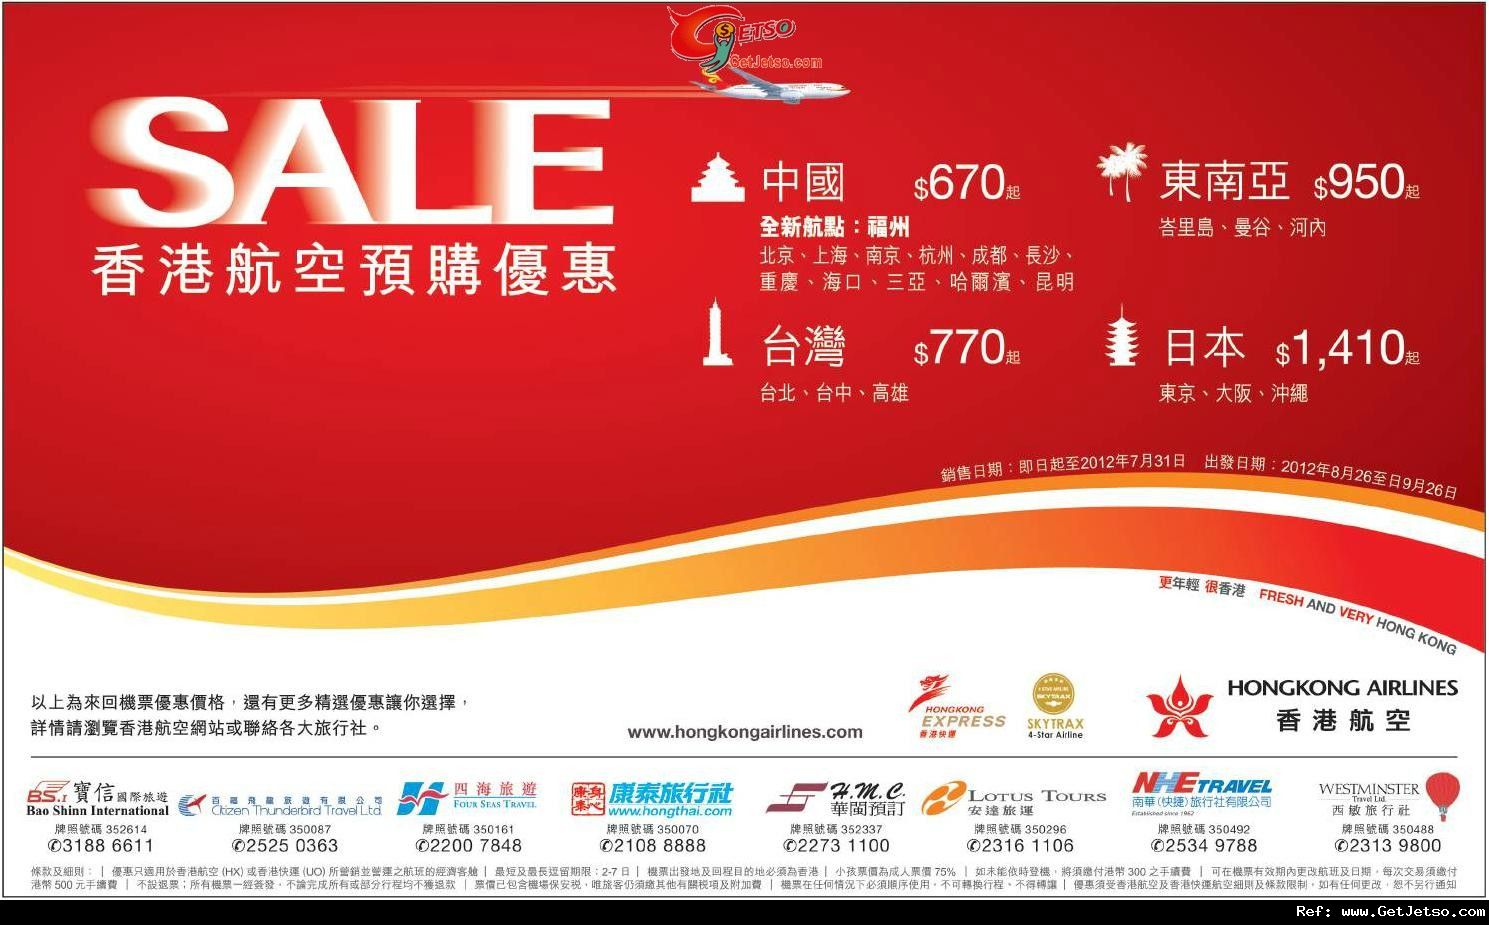 低至9來回內地/東南亞/台灣/日本機票優惠@香港航空(至12年7月31日)圖片1